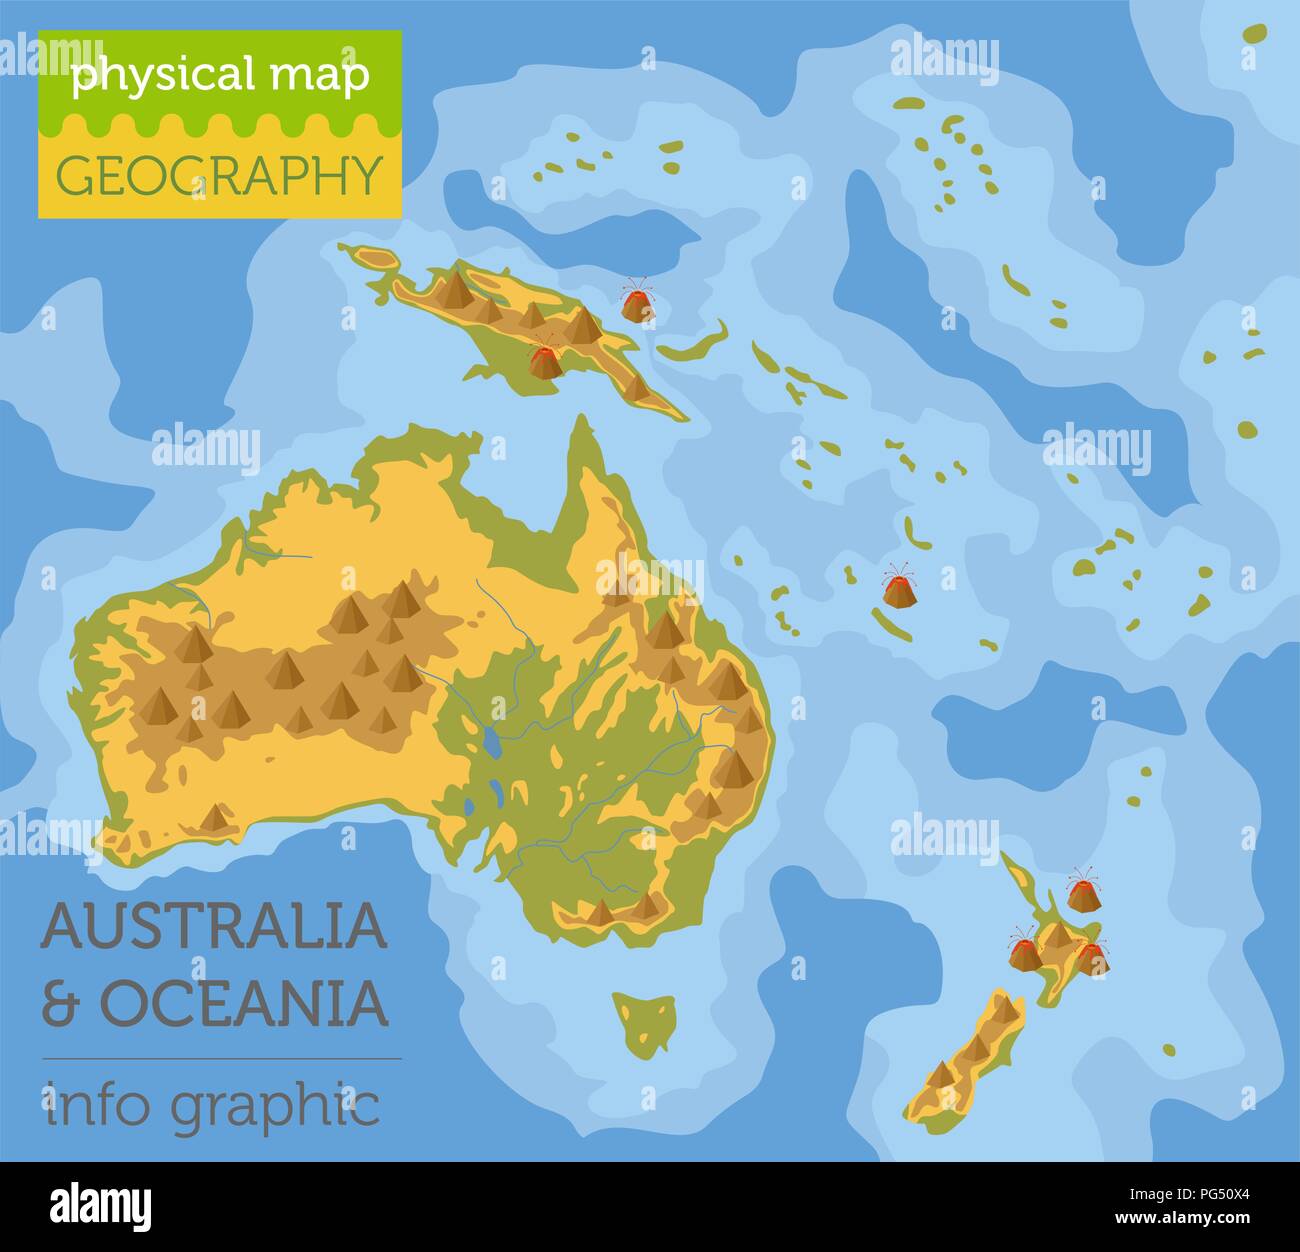 Australien und Ozeanien physische Karte Elemente. Ihre eigene Geographie info Graphische Sammlung aufzubauen. Vector Illustration Stock Vektor